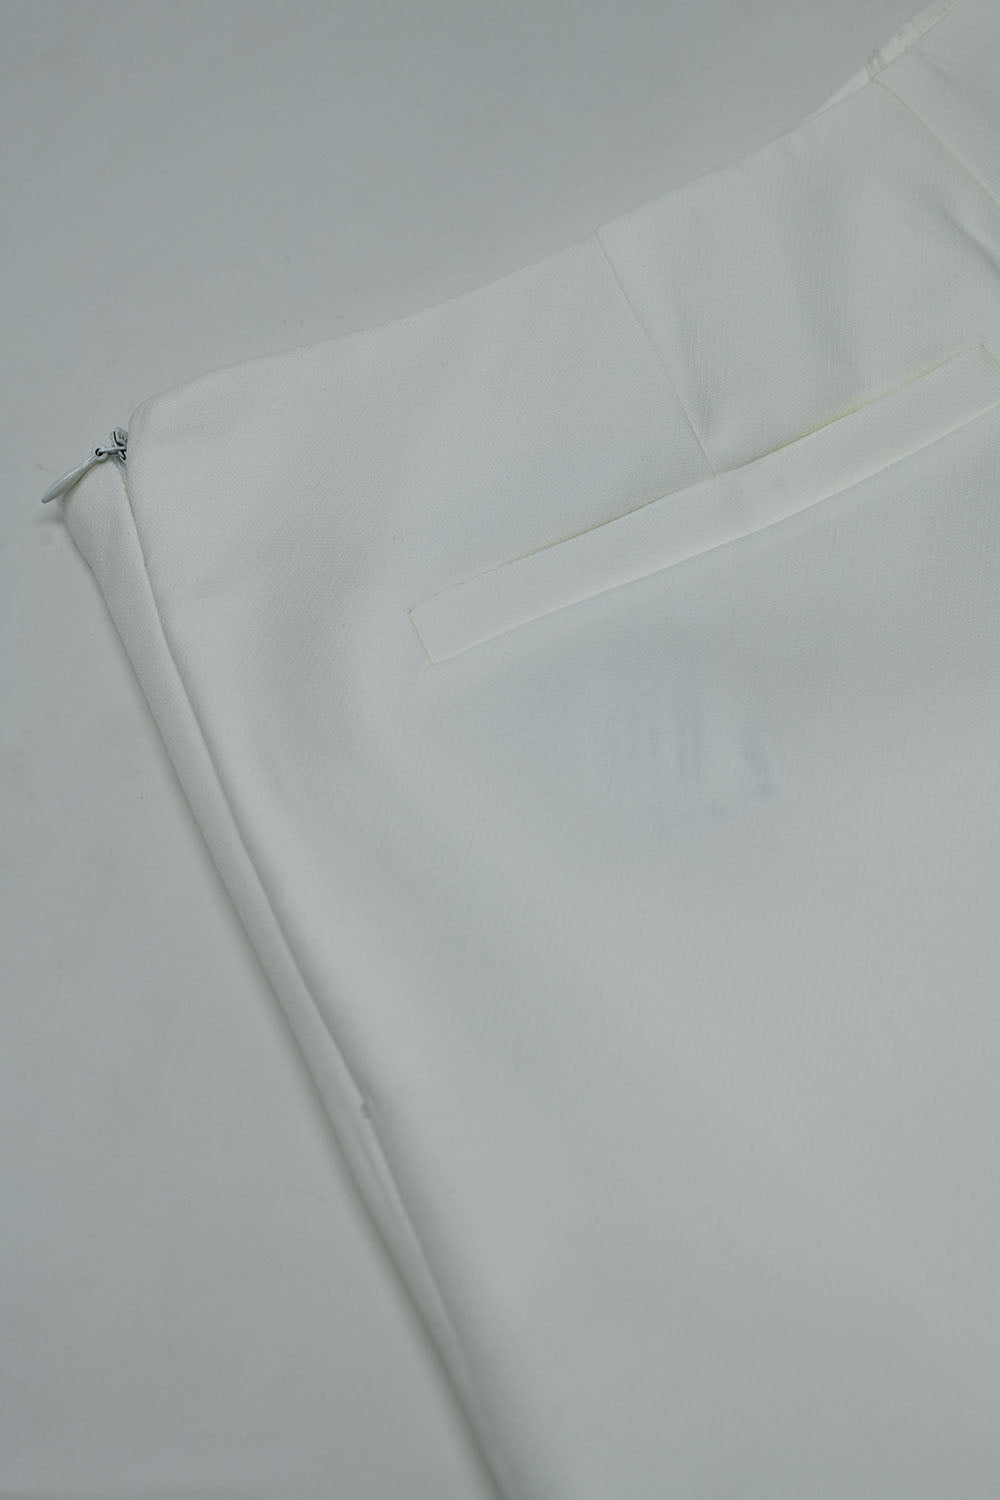 Wrap Mini Skort in White